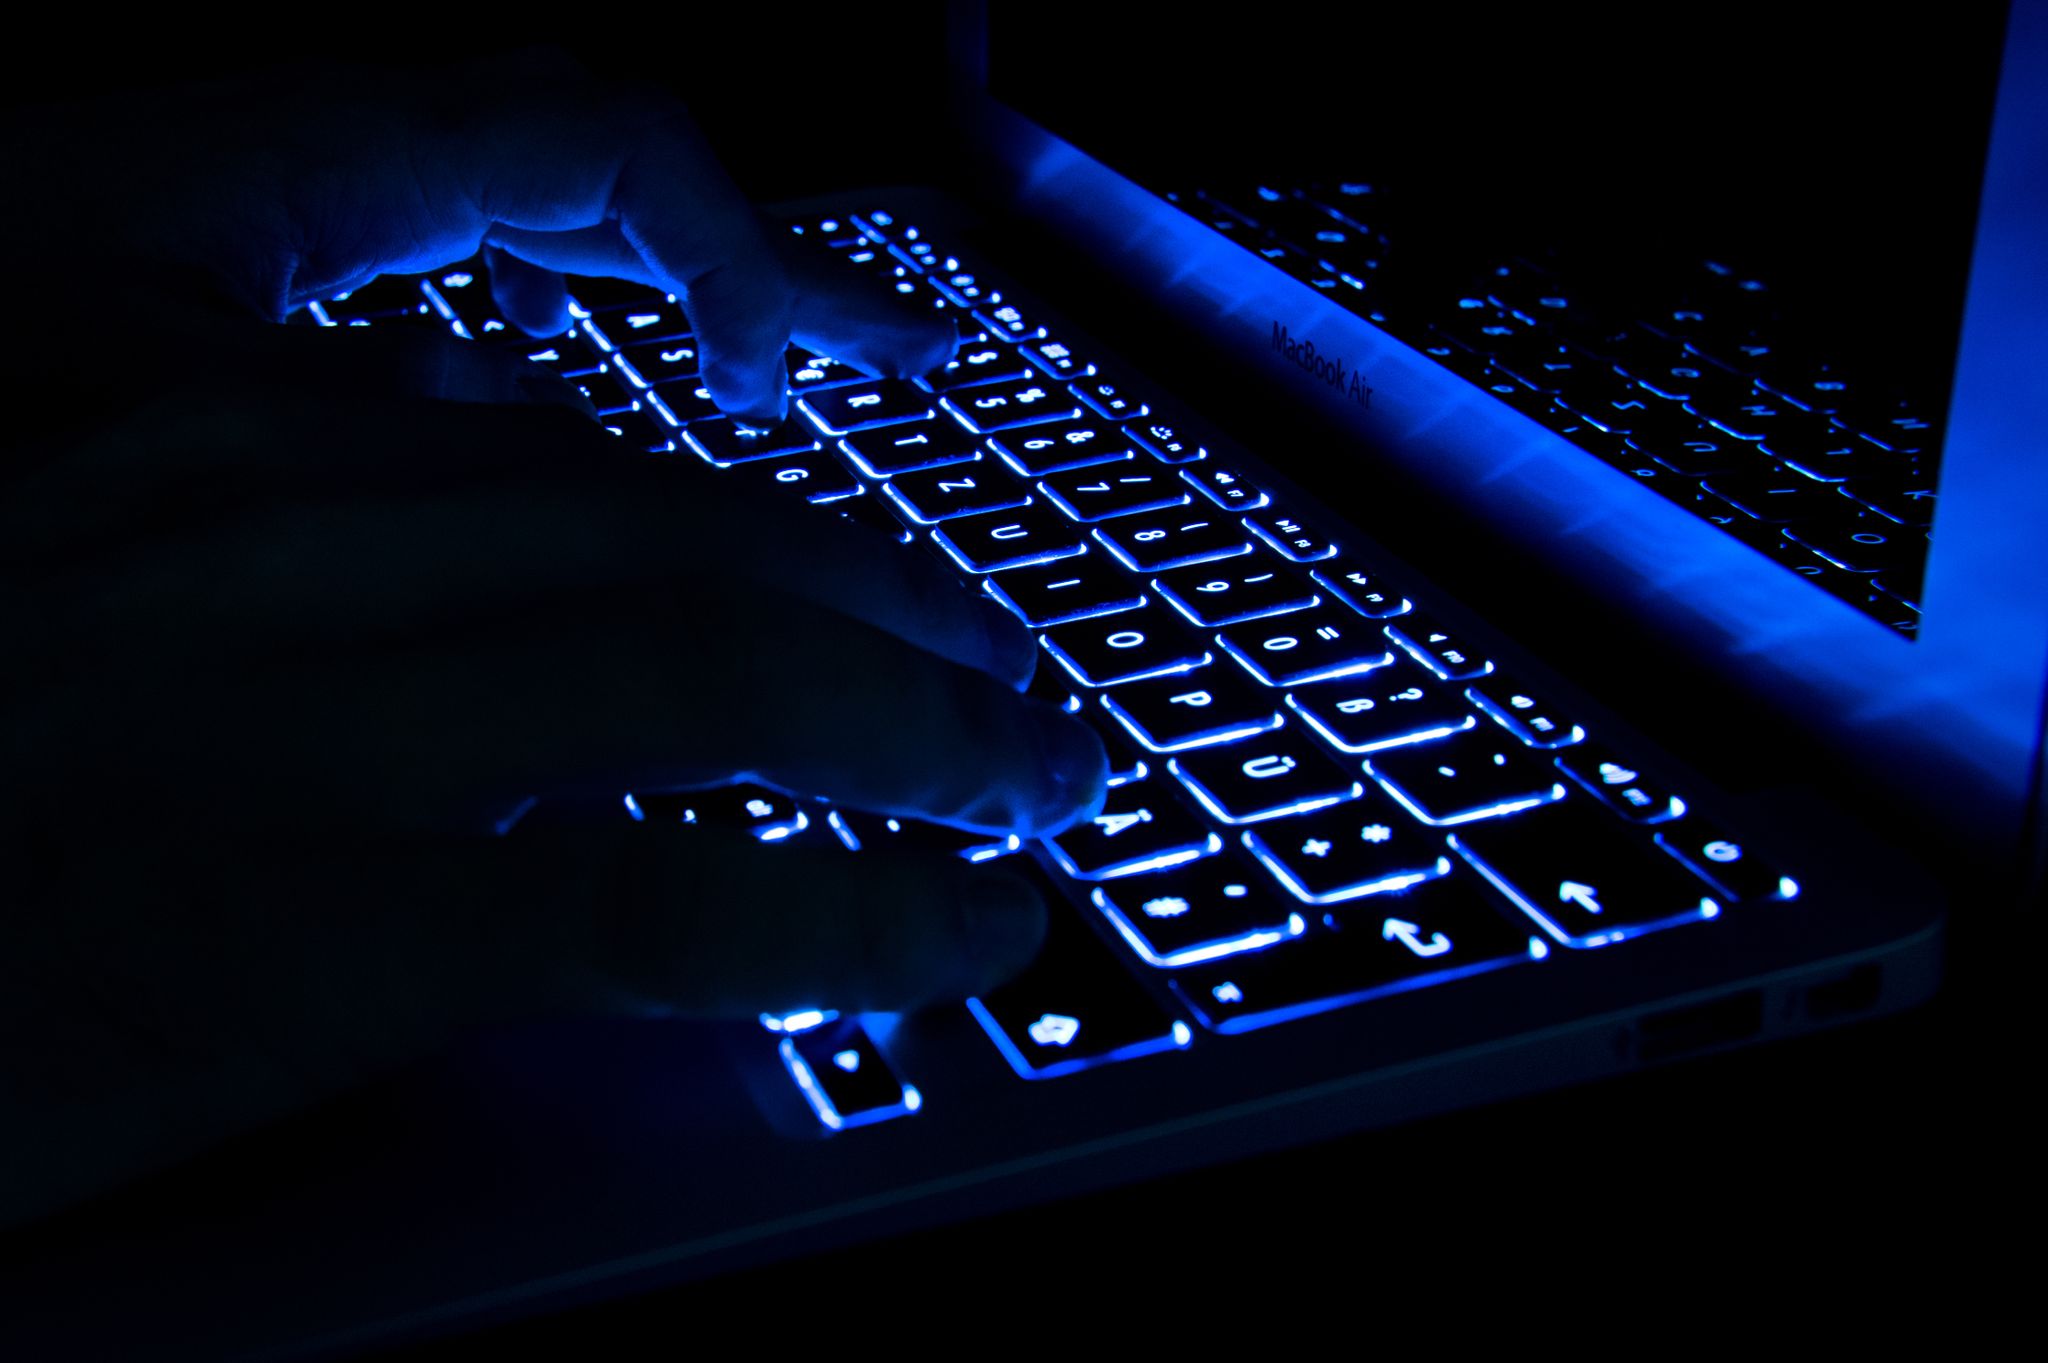 ILUSTRACIÓN - Los cibercriminales operan en parte en la internet oscura. Algunas aseguradoras ofrecen ayuda para encontrar datos perdidos en la darknet. Foto: Franziska Gabbert/dpa